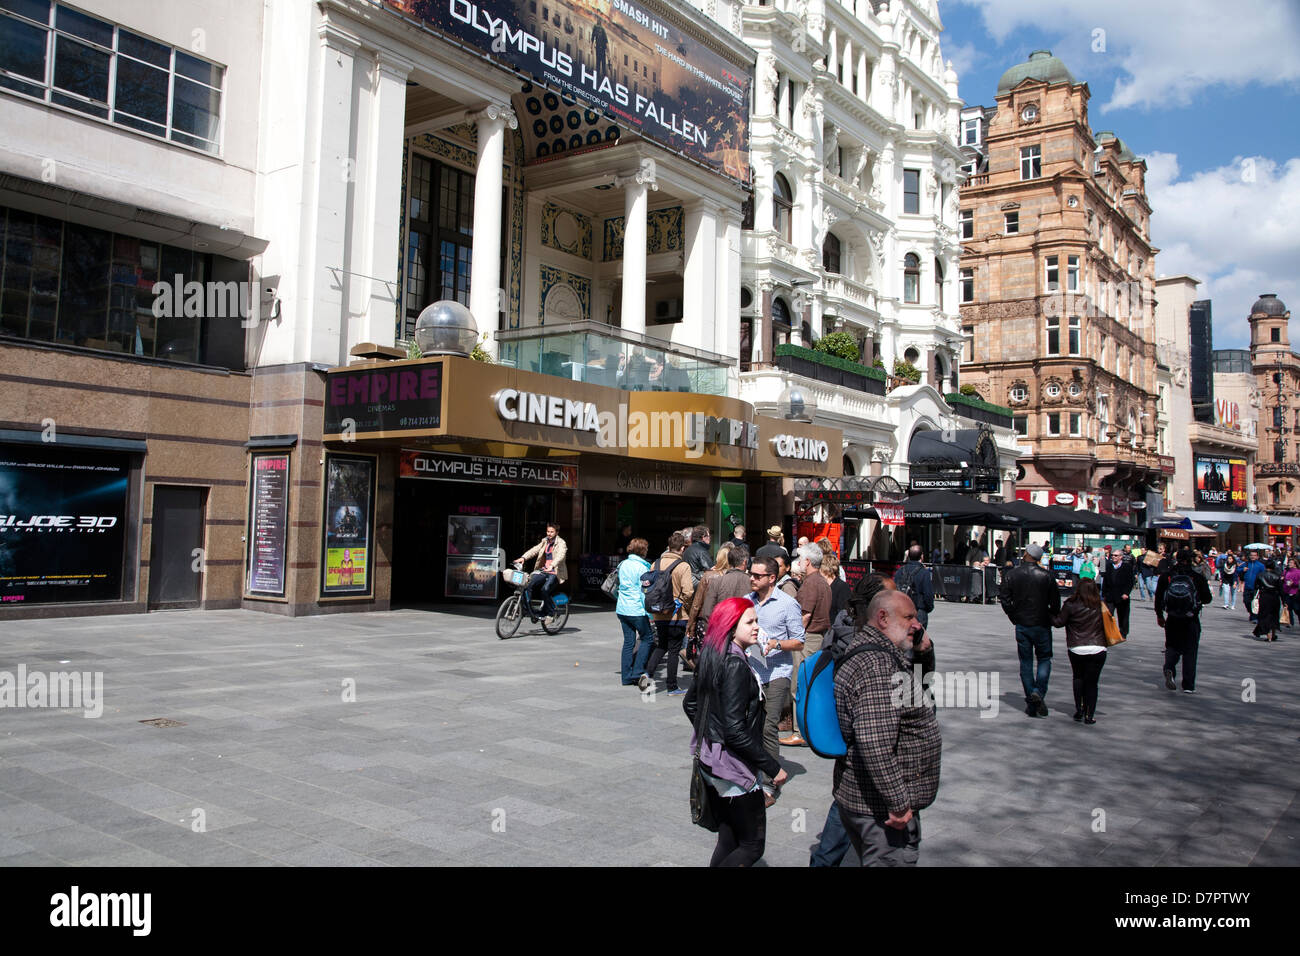 Vue sur Leicester Square montrant cinéma Empire, West End, Londres, Angleterre, Royaume-Uni Banque D'Images